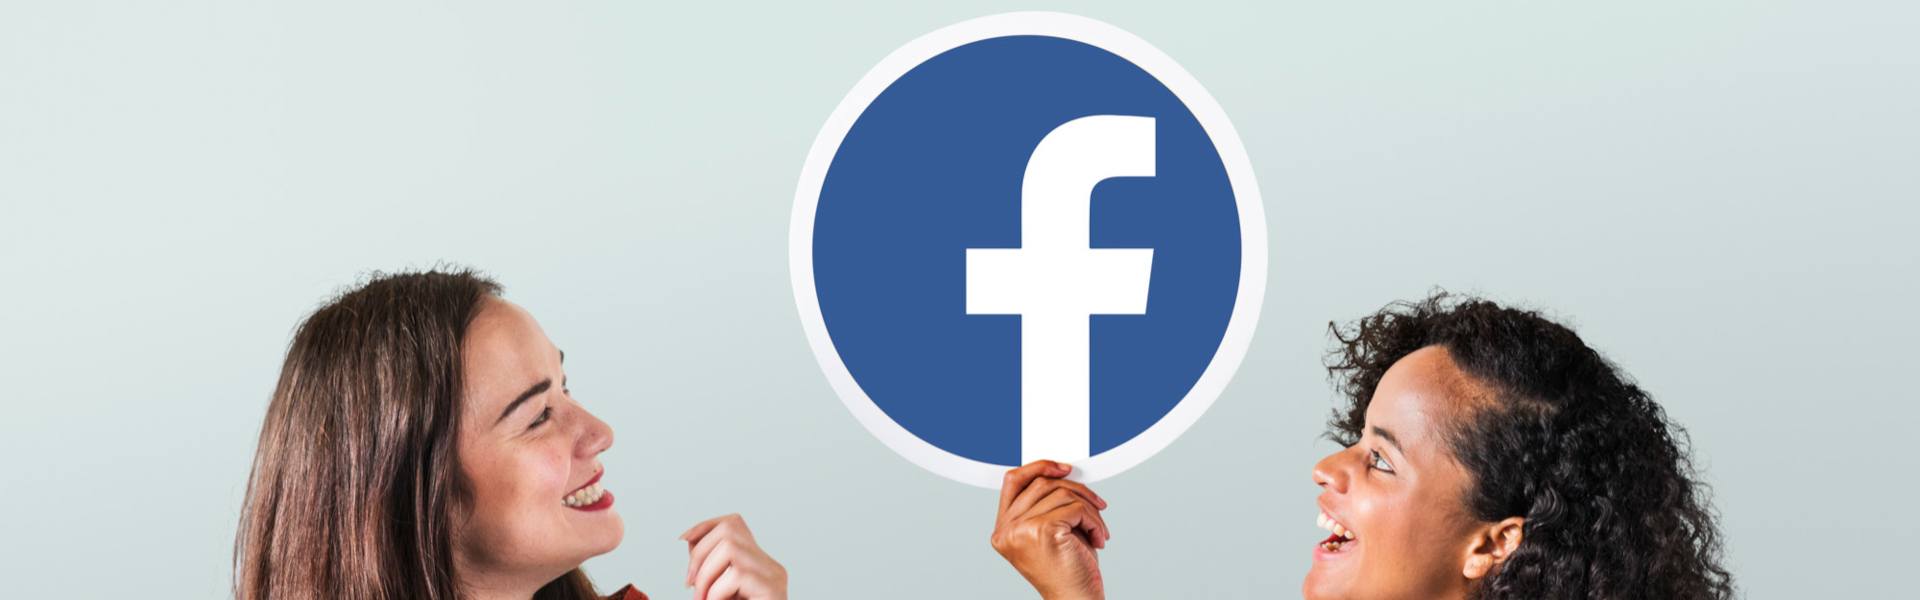 Facebook: Importancia para el Engage del Usuario